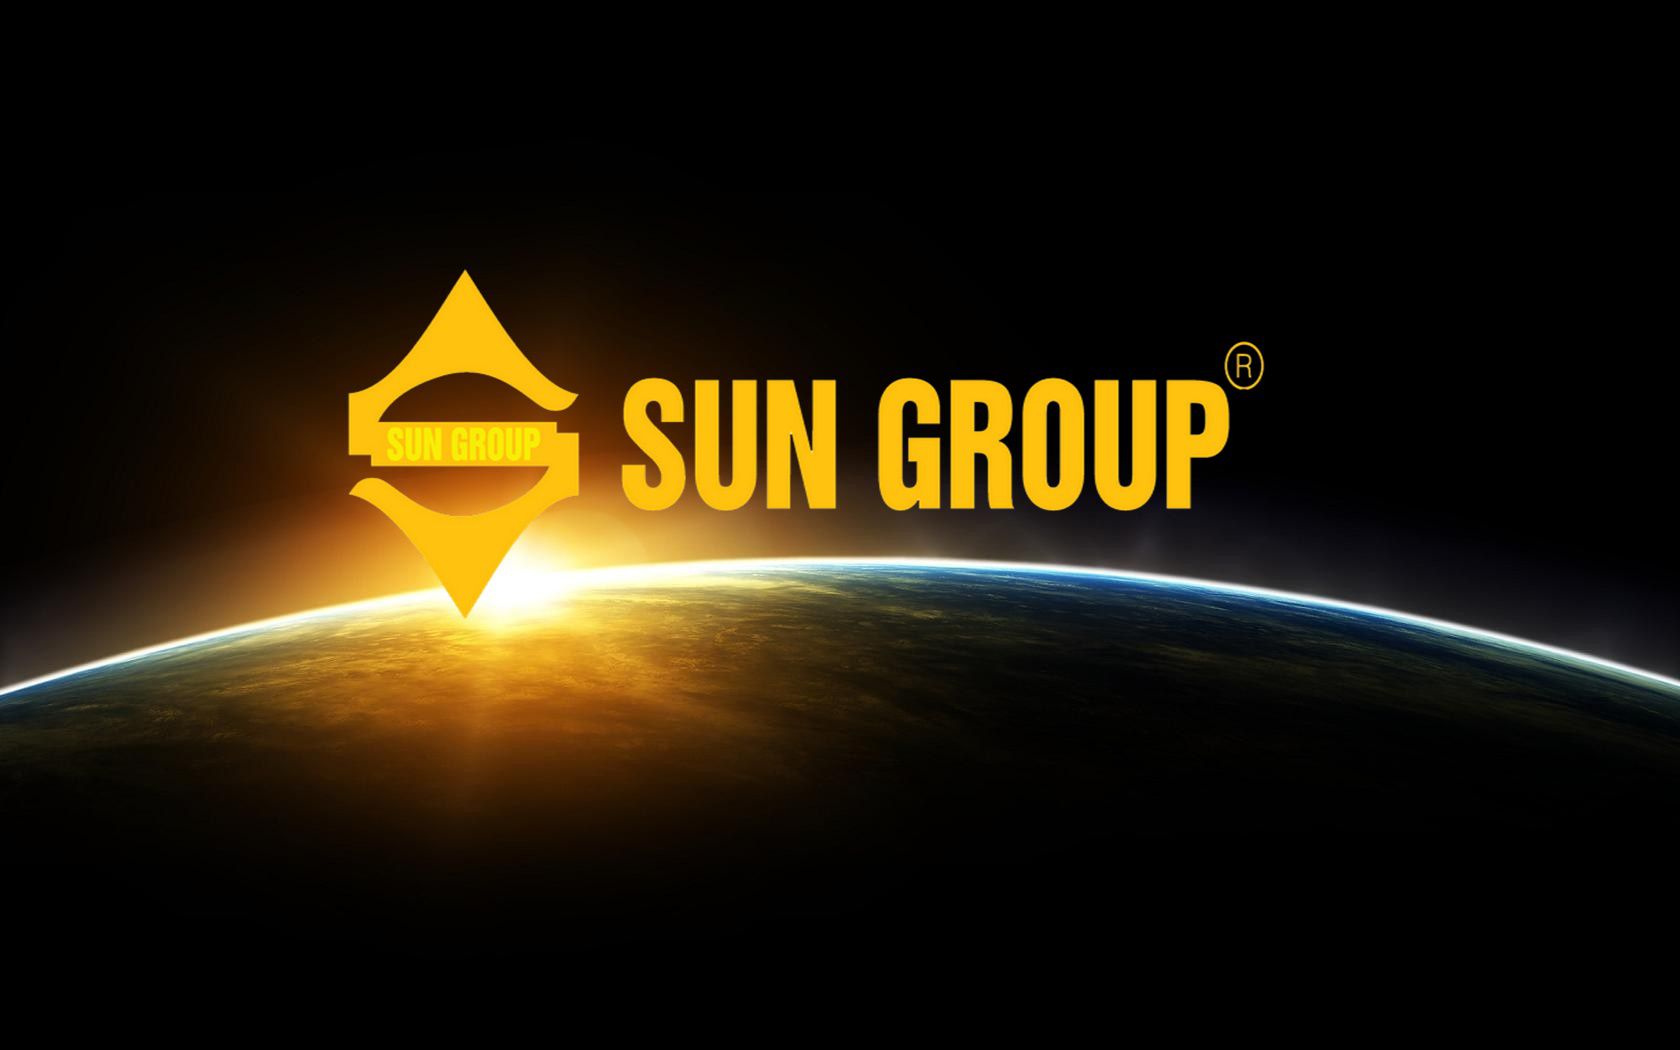 Review Công Ty Sun group - Đánh giá từ chính nhân viên